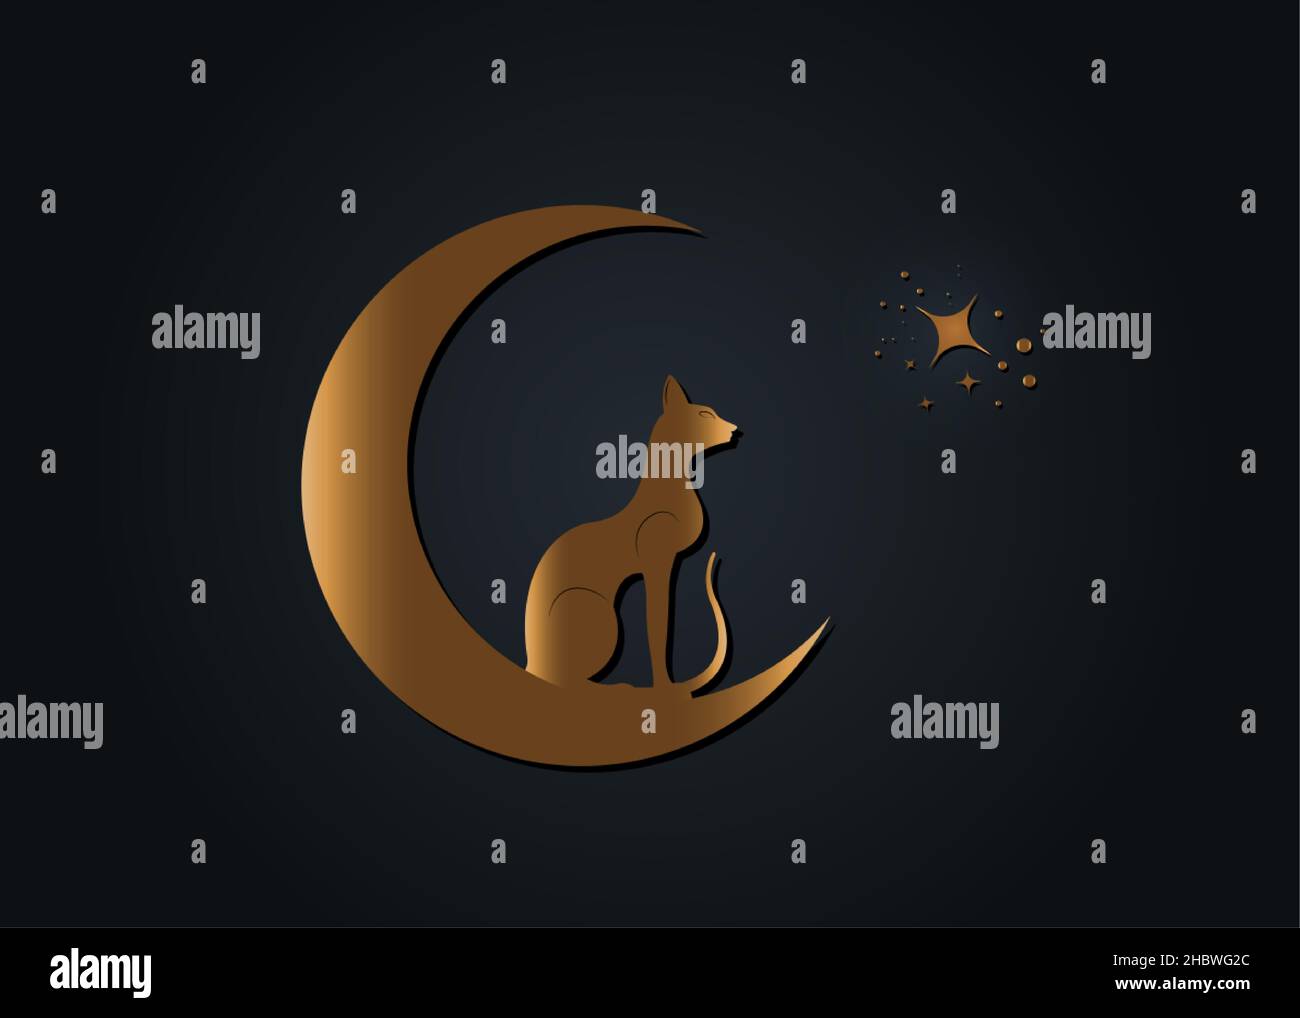 Gatto nero egiziano seduto sulla luna crescente, guarda le stelle. Logo Golden Alchemy simbolo Wicca, stile boho, icona tatuaggio oro. SEGNO vettoriale Illustrazione Vettoriale